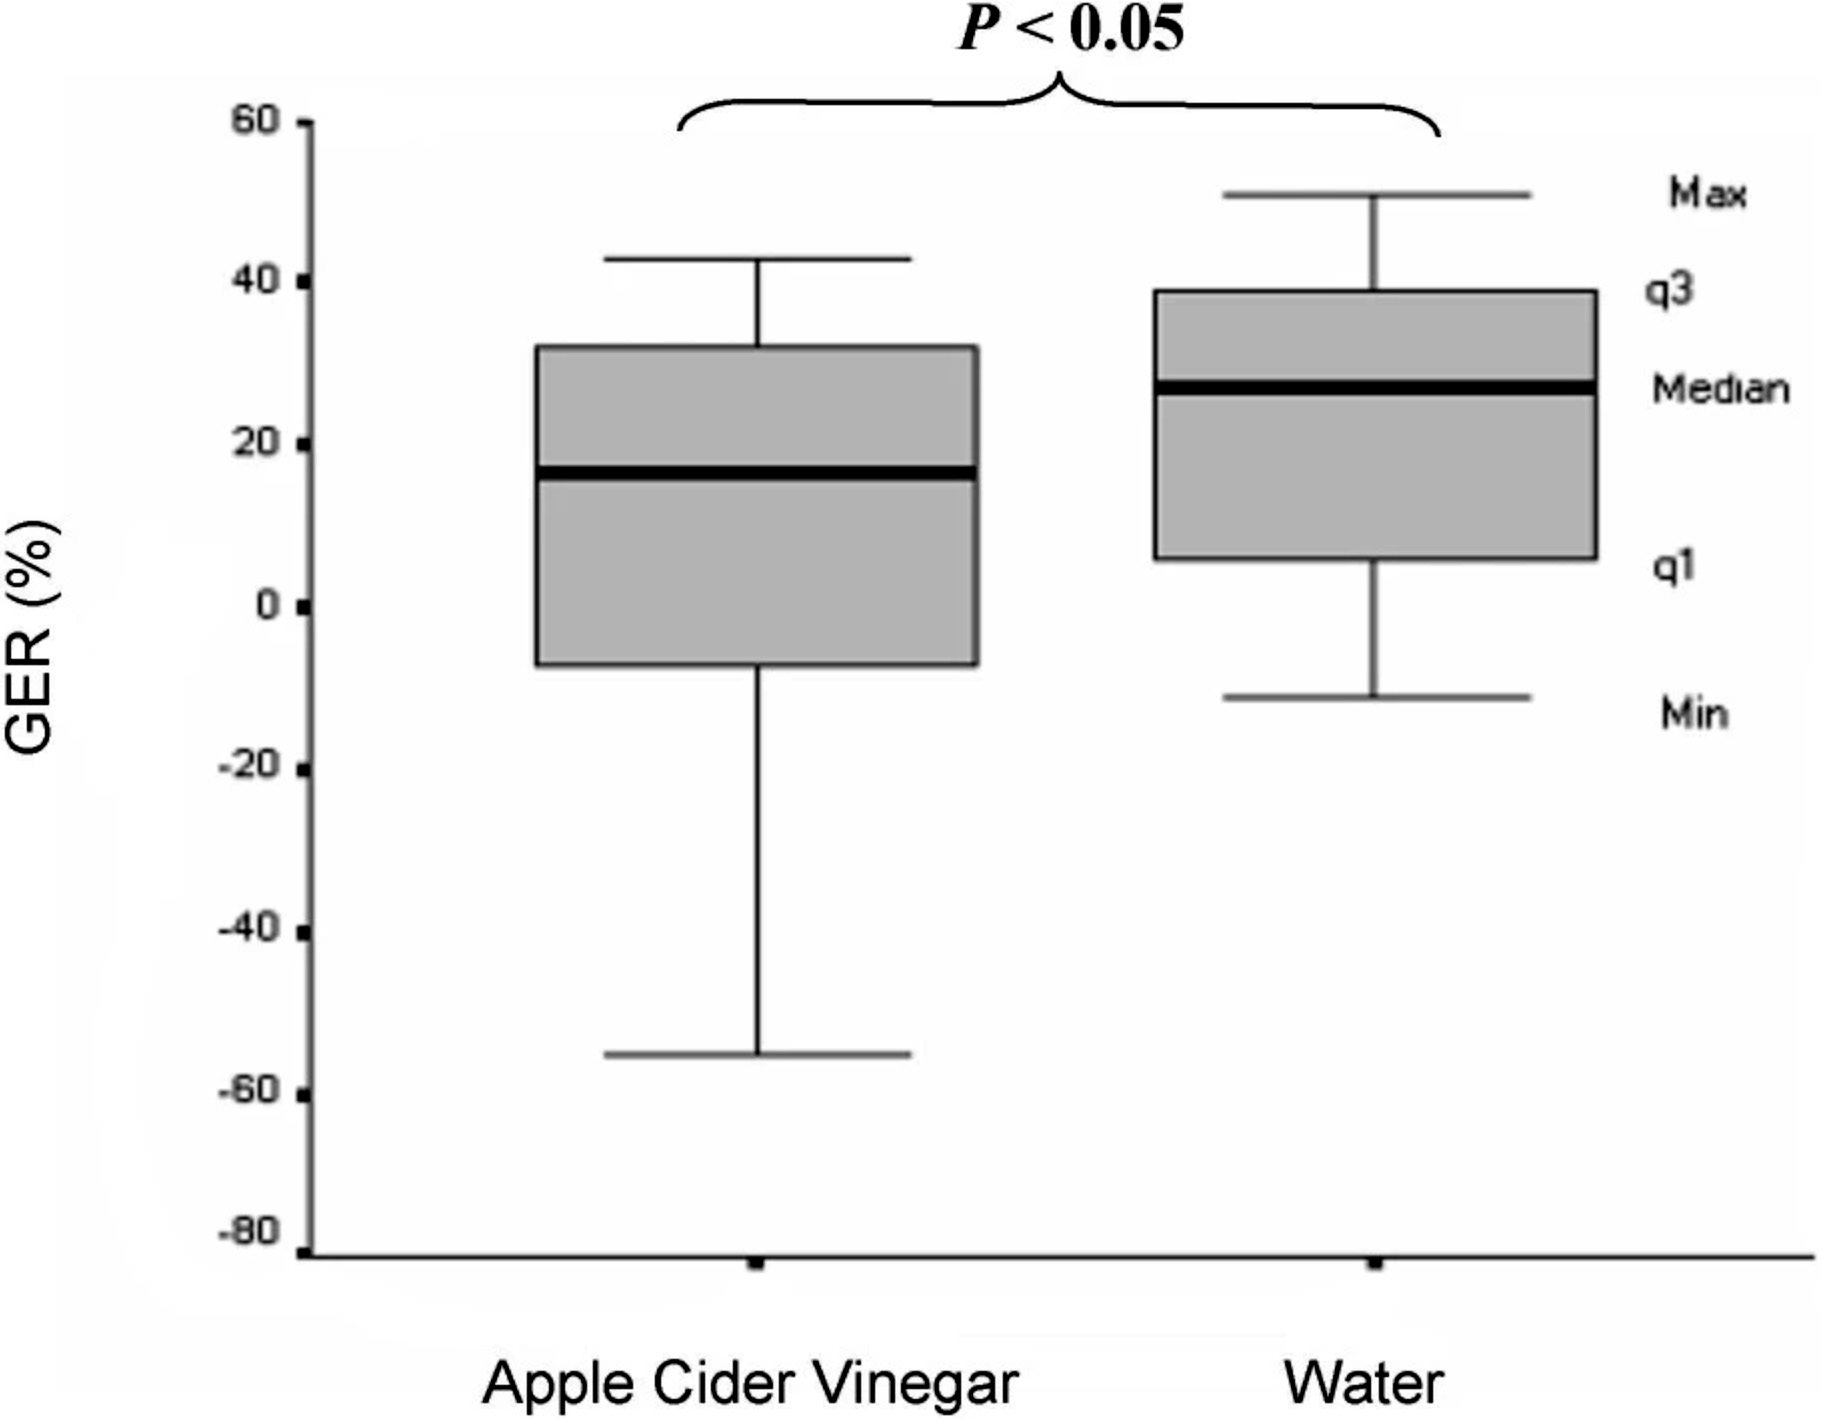 Différence de vidange gastrique avec la consommation d'eau ou de vinaigre